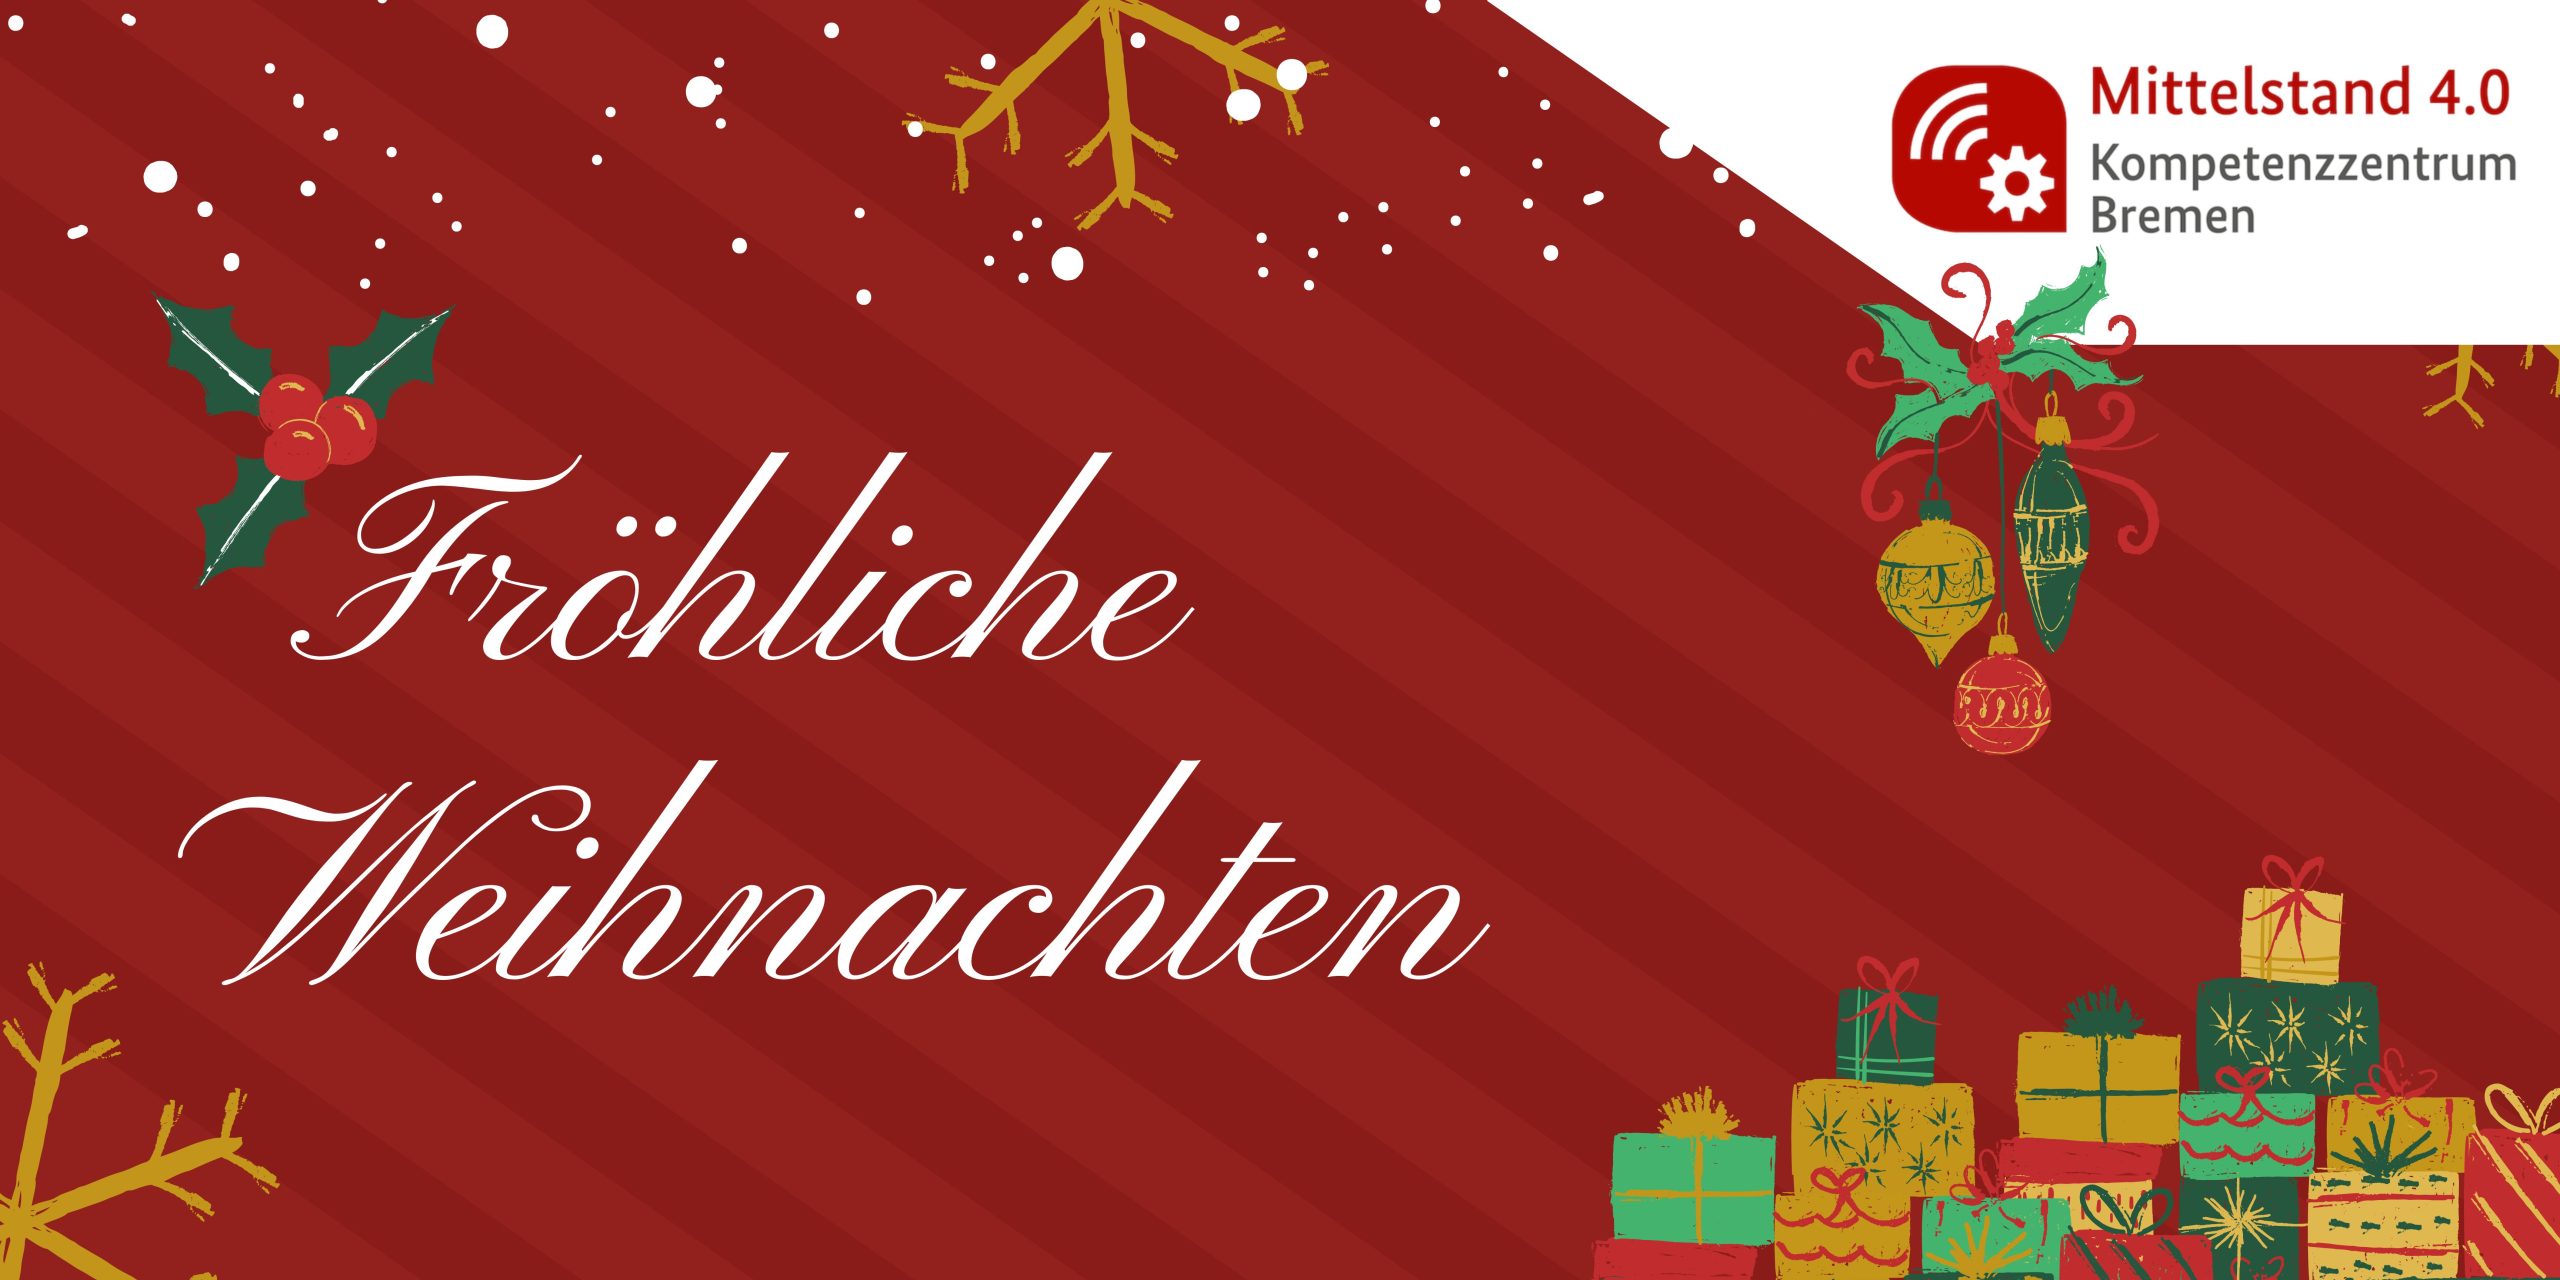 Fröhliche Weihnachten mit Veranstaltungsaufzeichnungen von Ihrem Mittelstand 4.0-Kompetenzzentrum Bremen